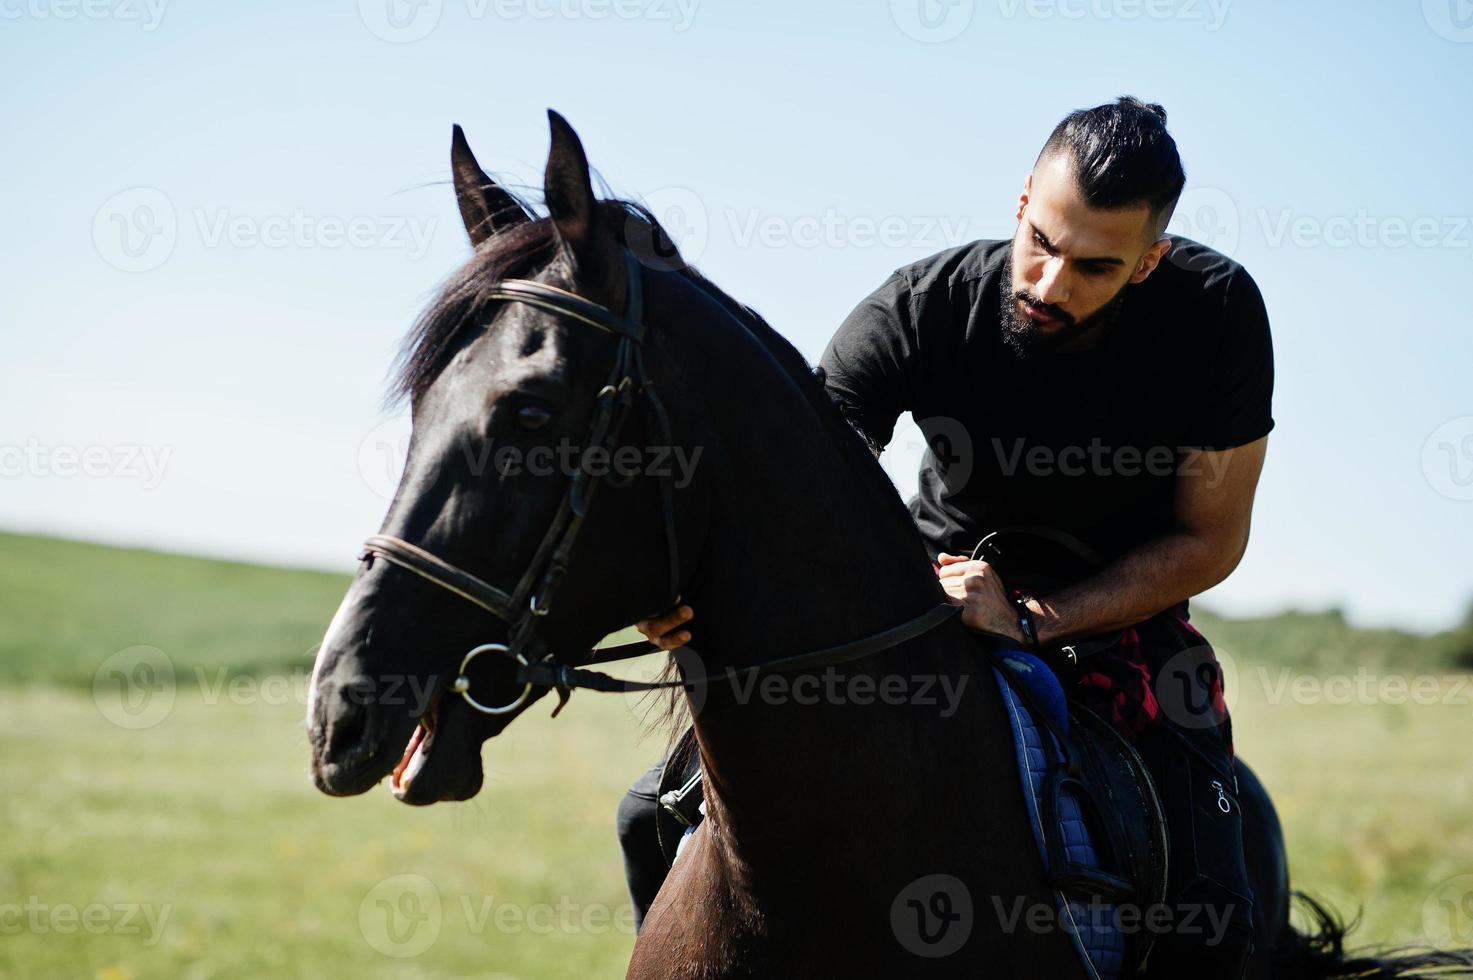 barbe haute arabe homme porter en cheval arabe noir ride. photo